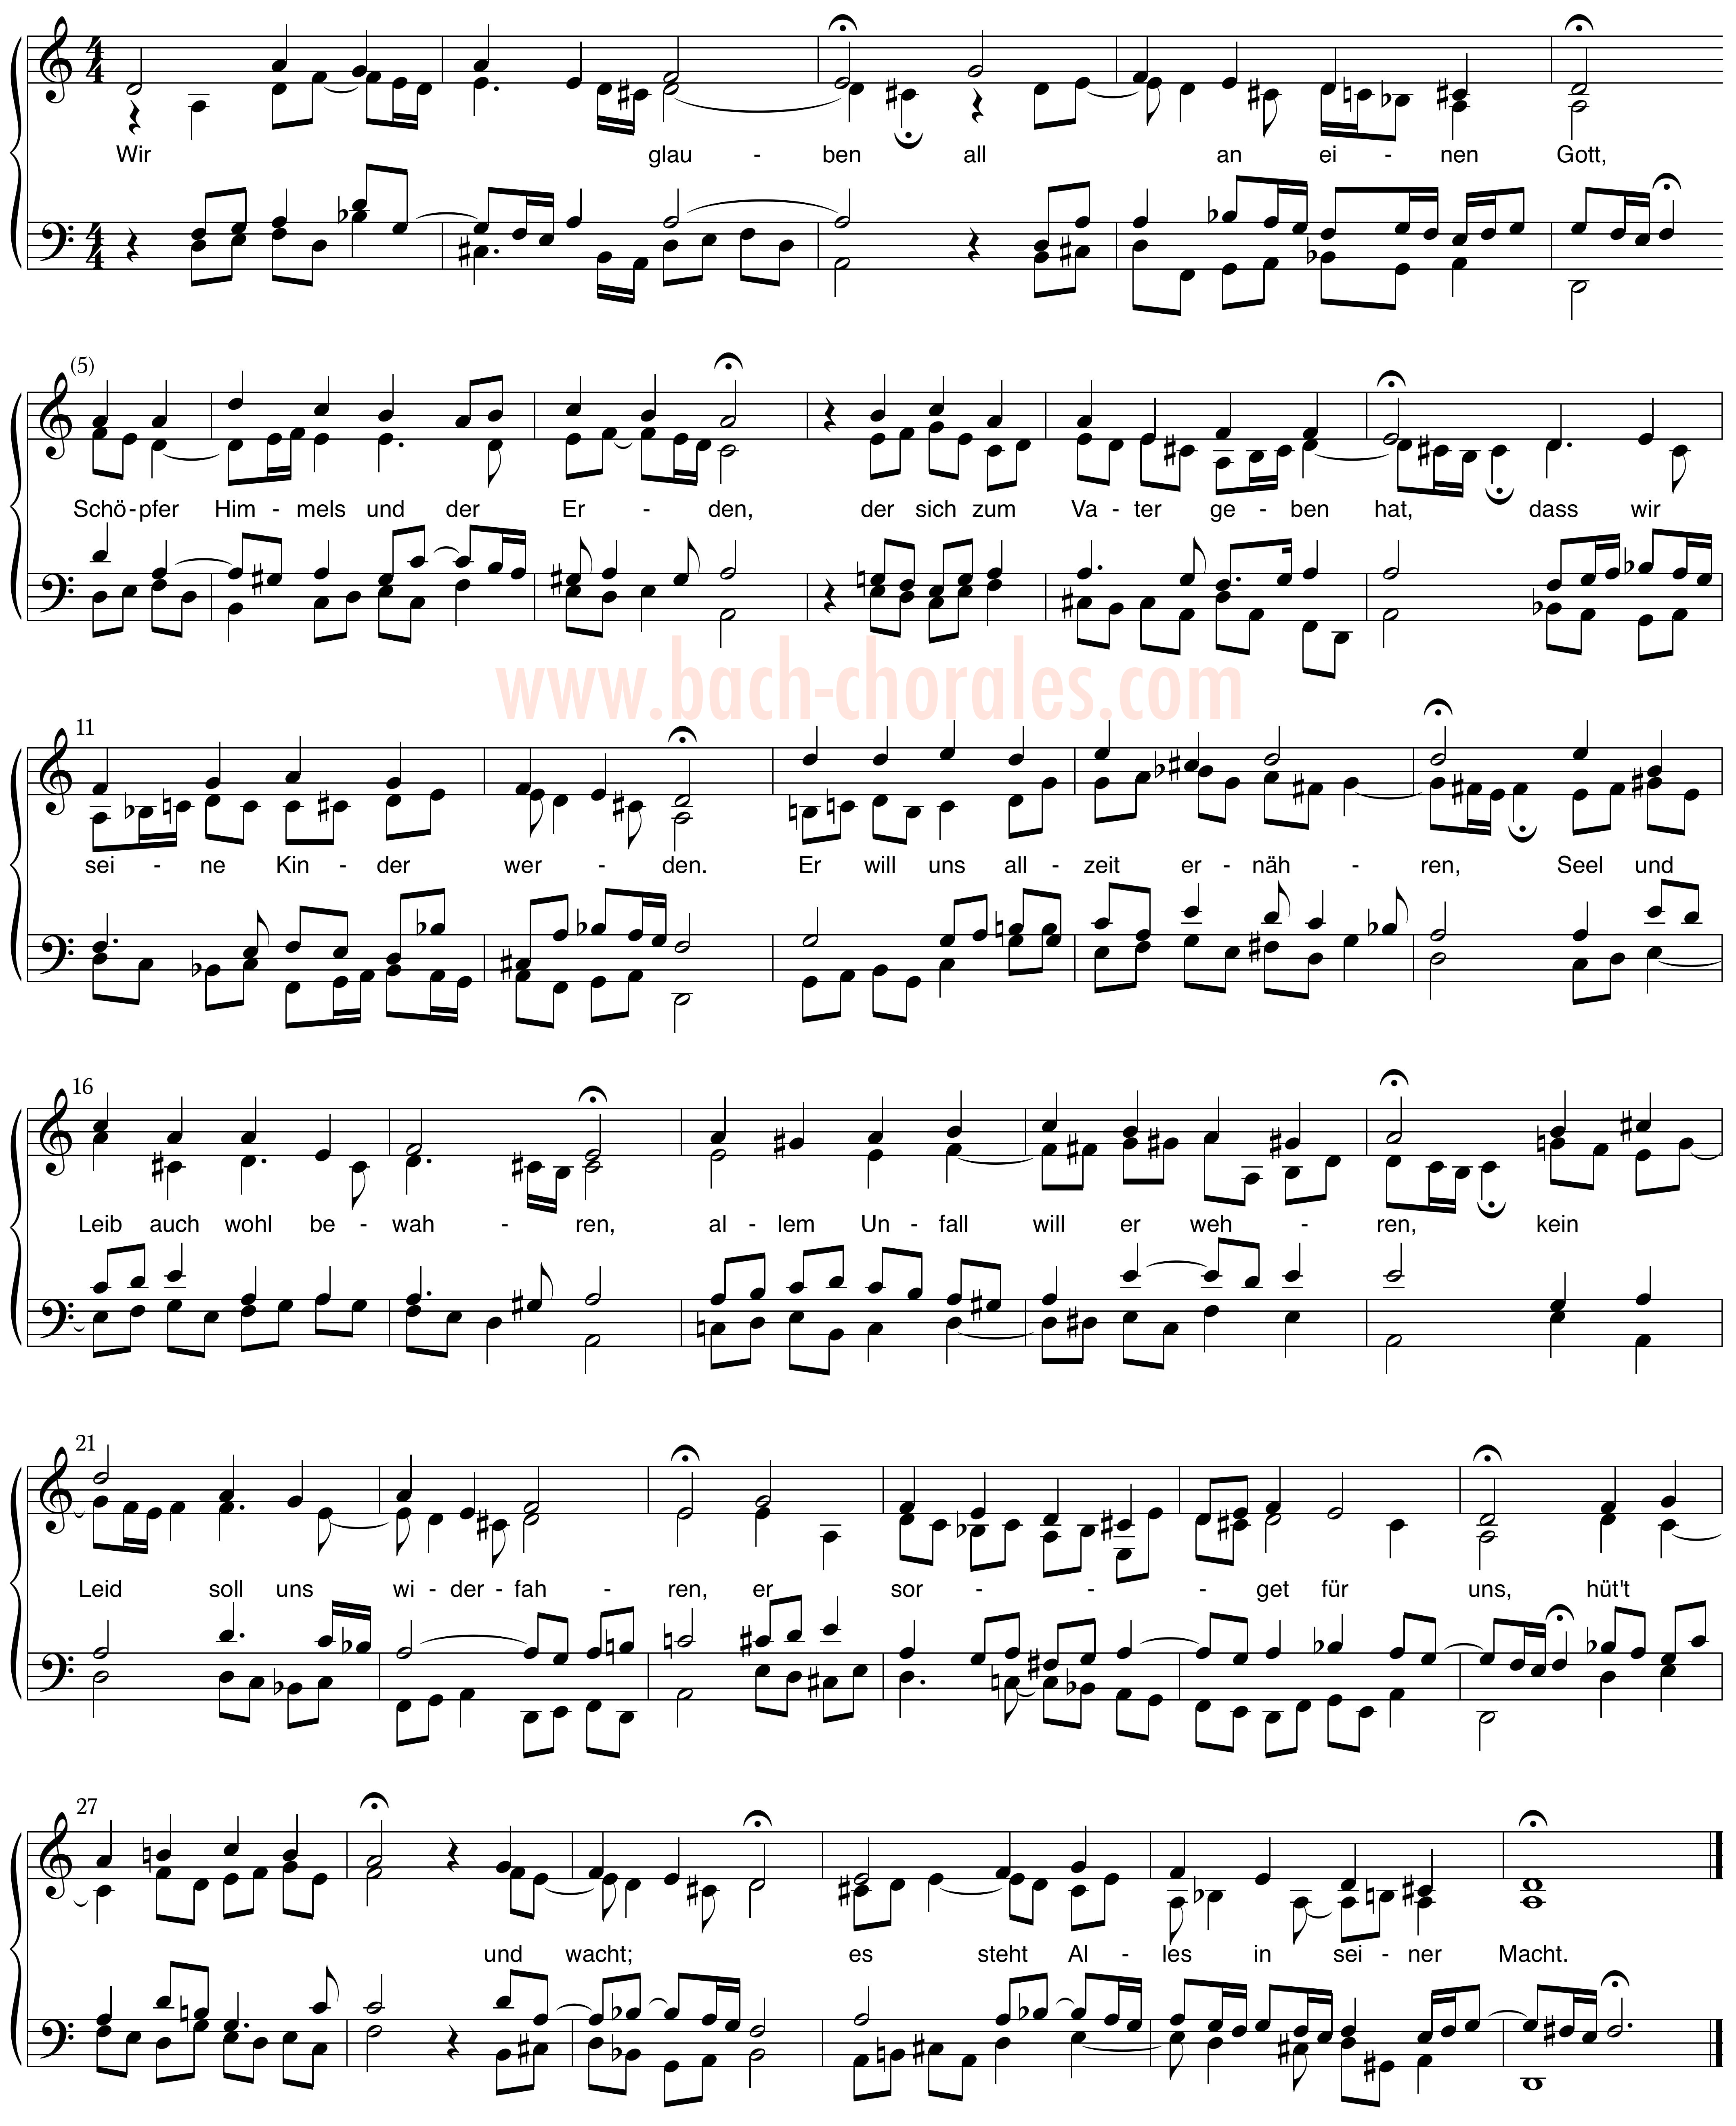 notenbeeld BWV 437 op https://www.bach-chorales.com/